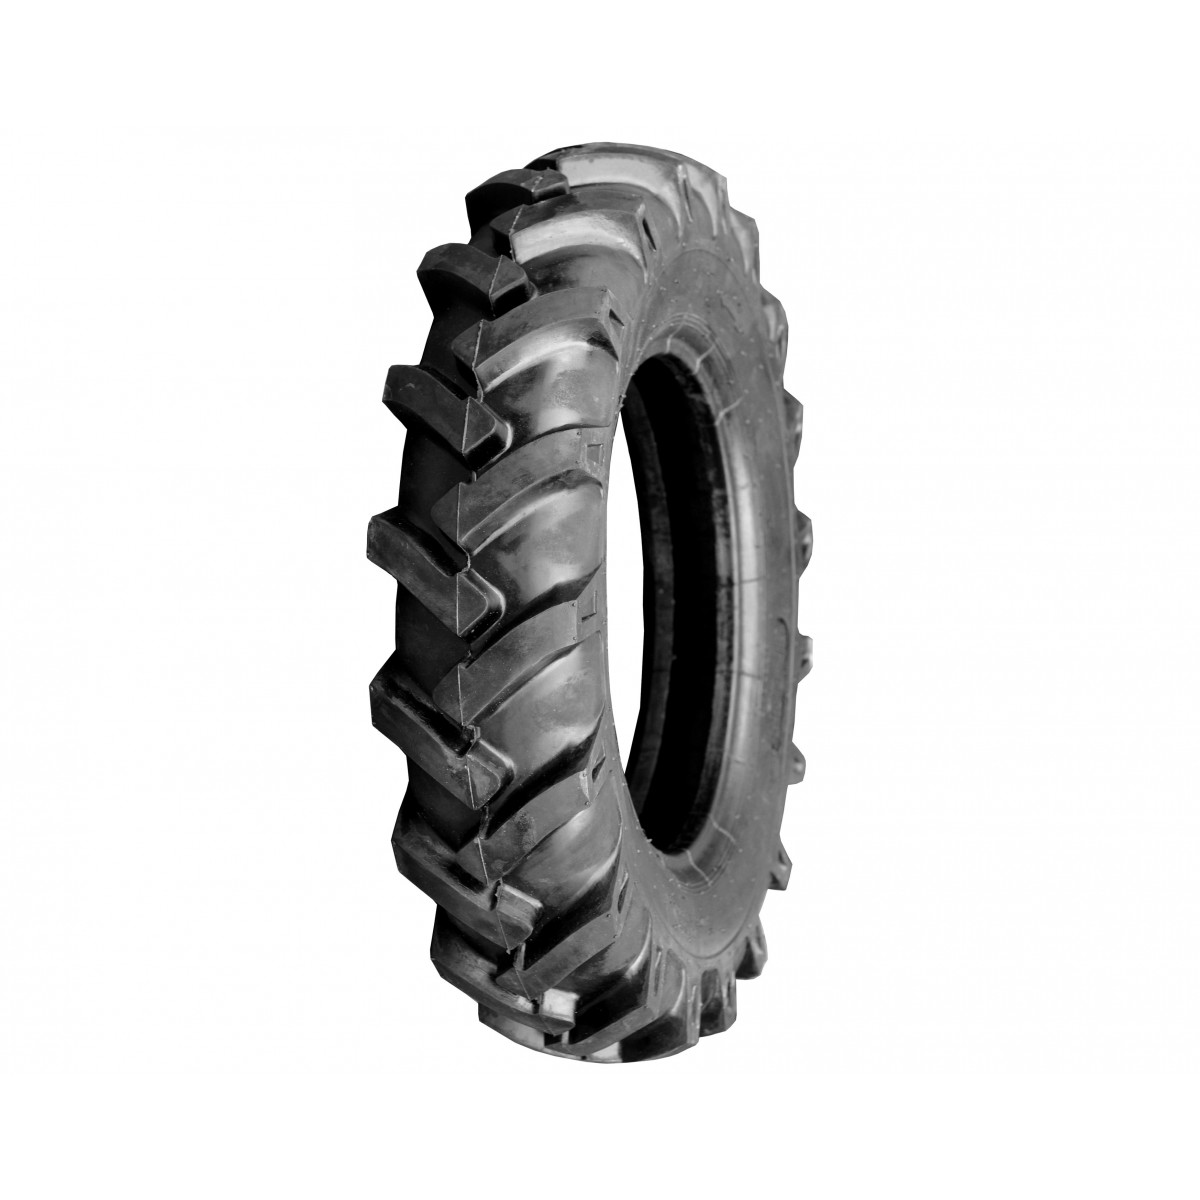 Zemědělská pneumatika 8.00-18 8PR 8-18 8x18 FIR R1